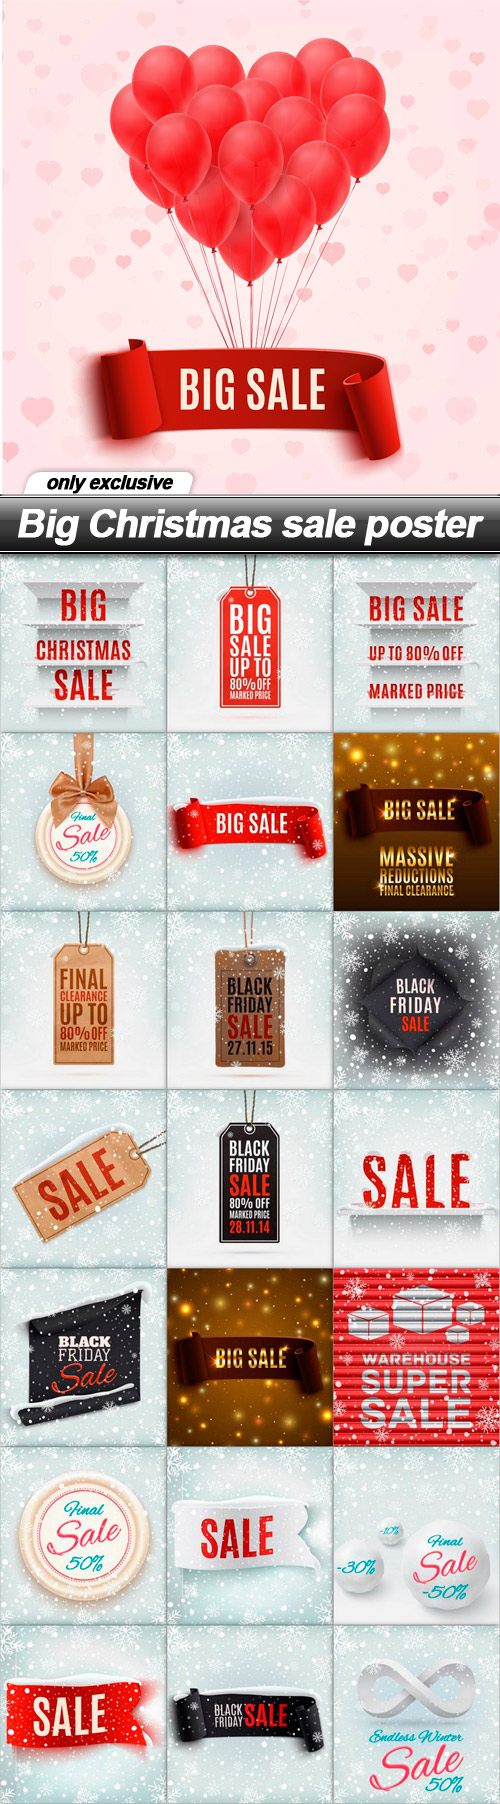 Big Christmas sale poster - 22 EPS